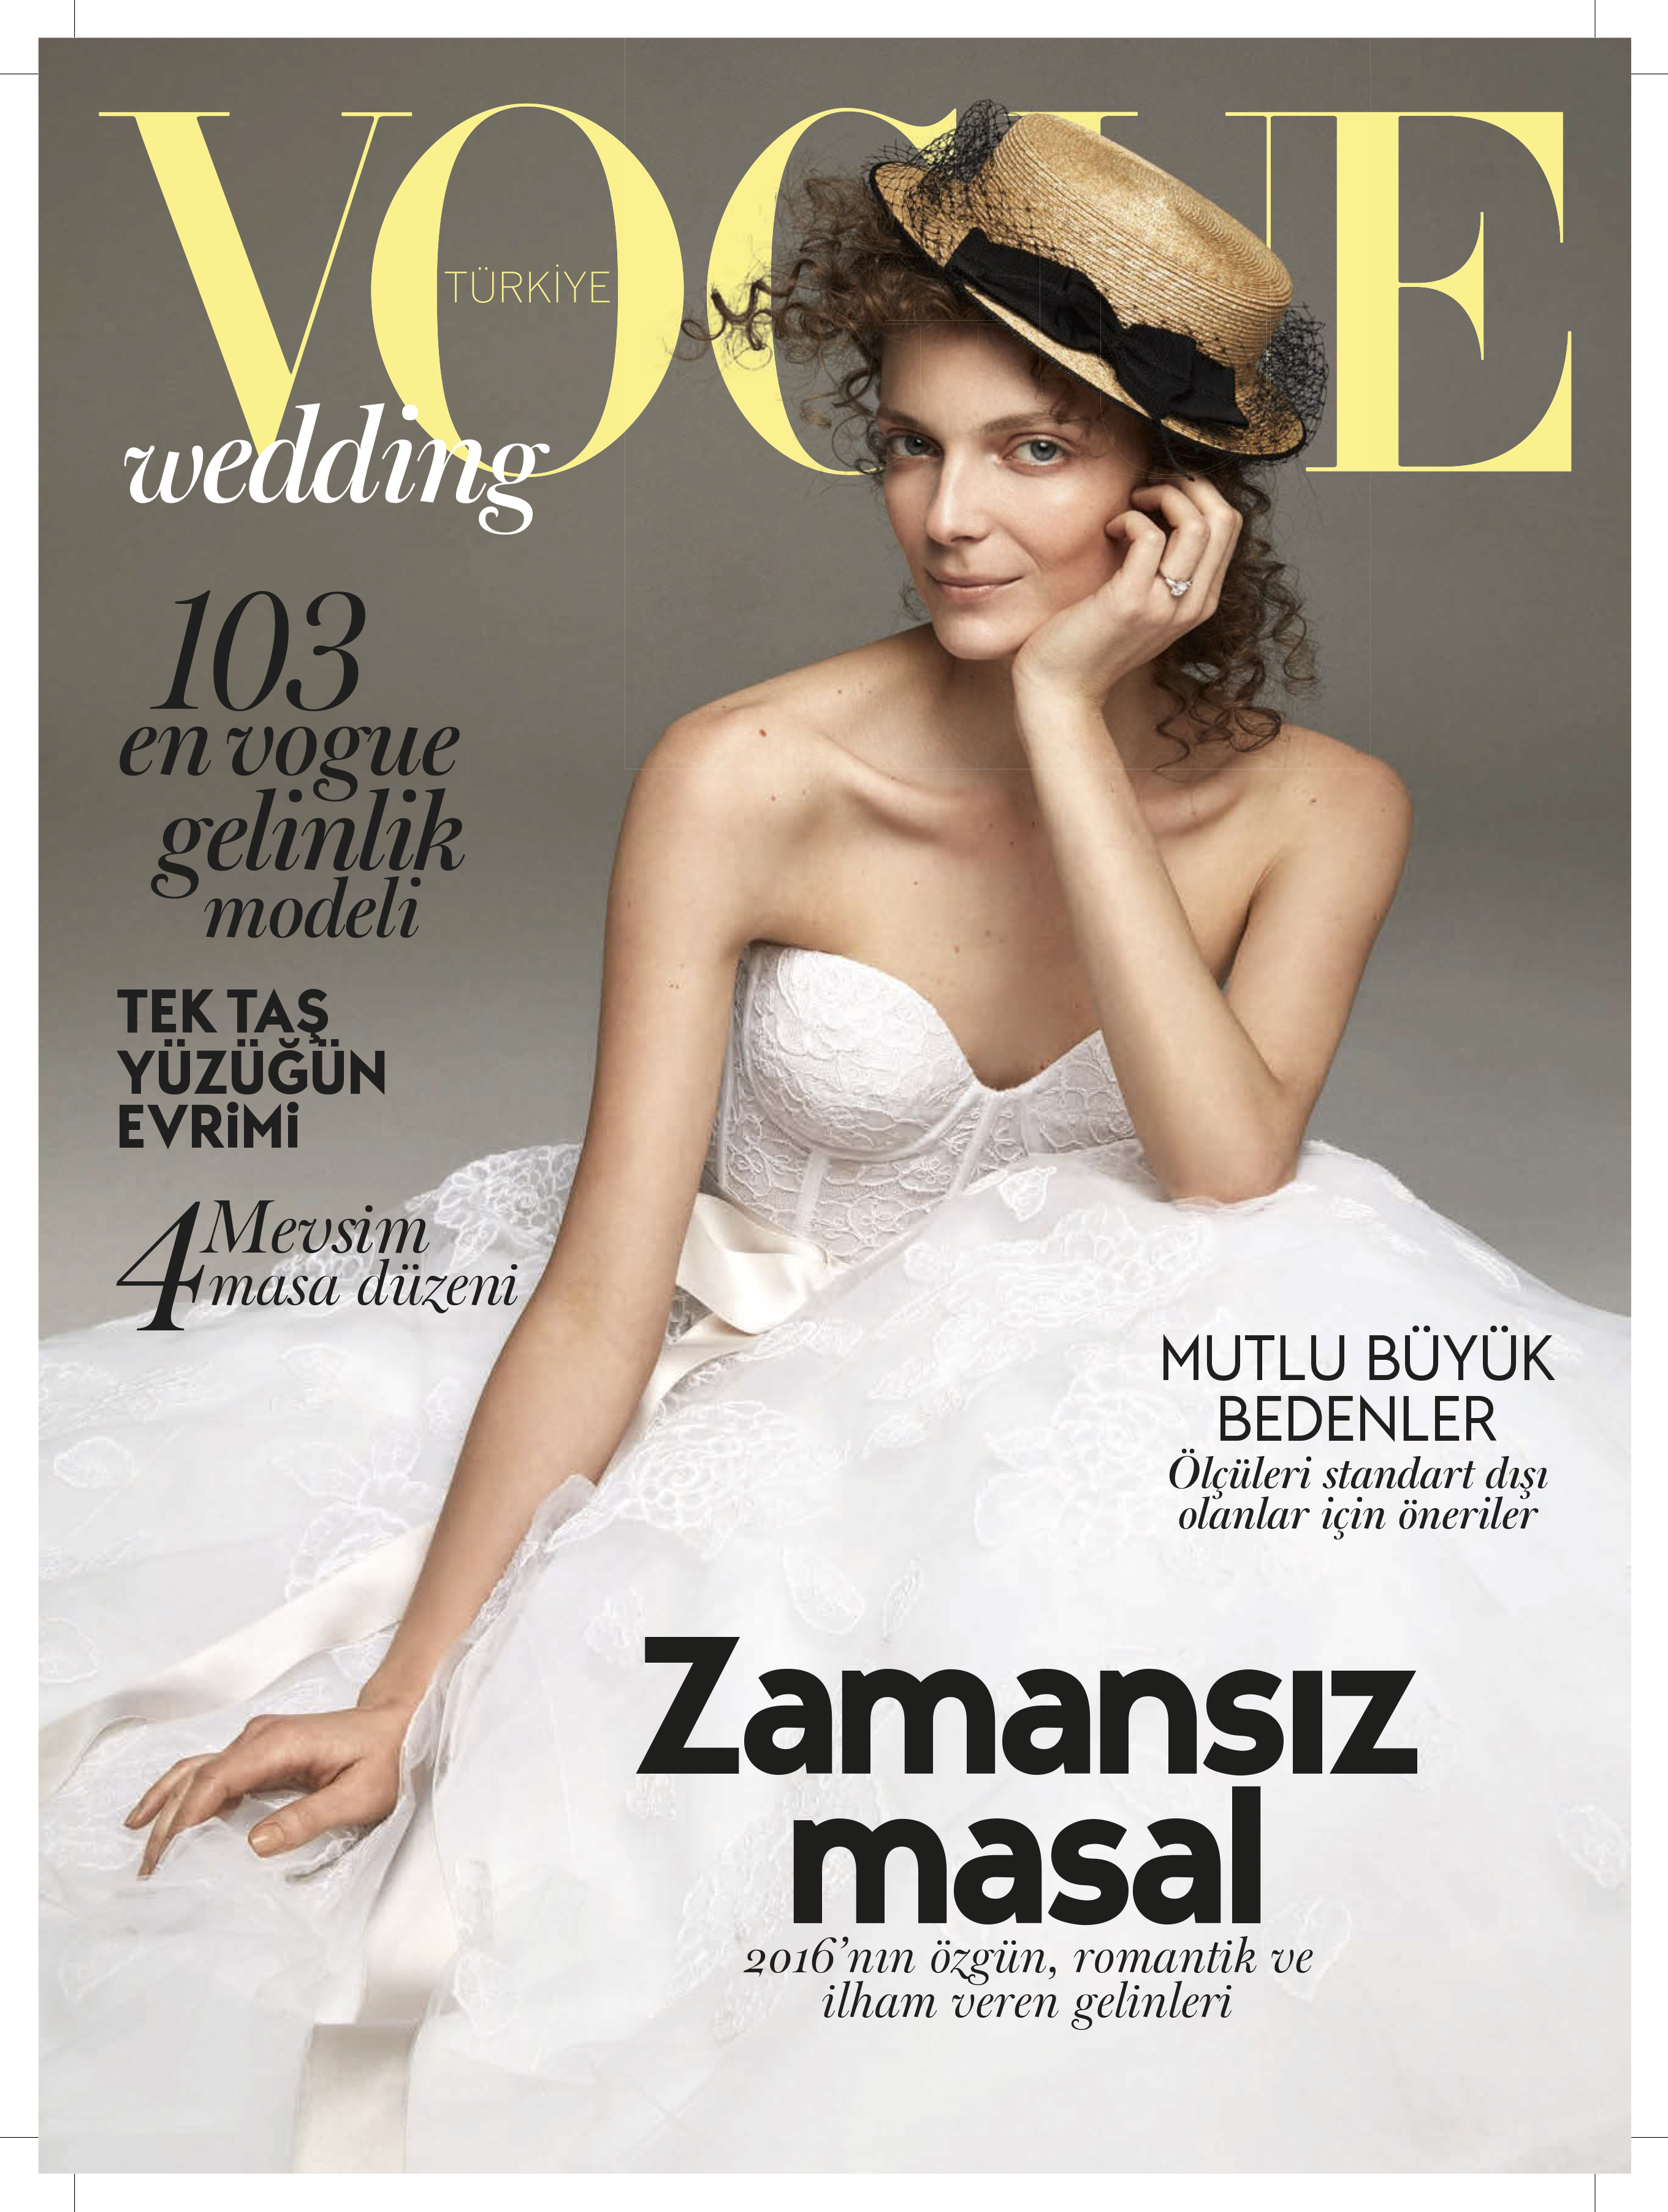 Българката Нора Шопова изгря на корица на модната библия "Вог". Броят за месец април на турското издание е озарен от прелестните черти на панагюрката.